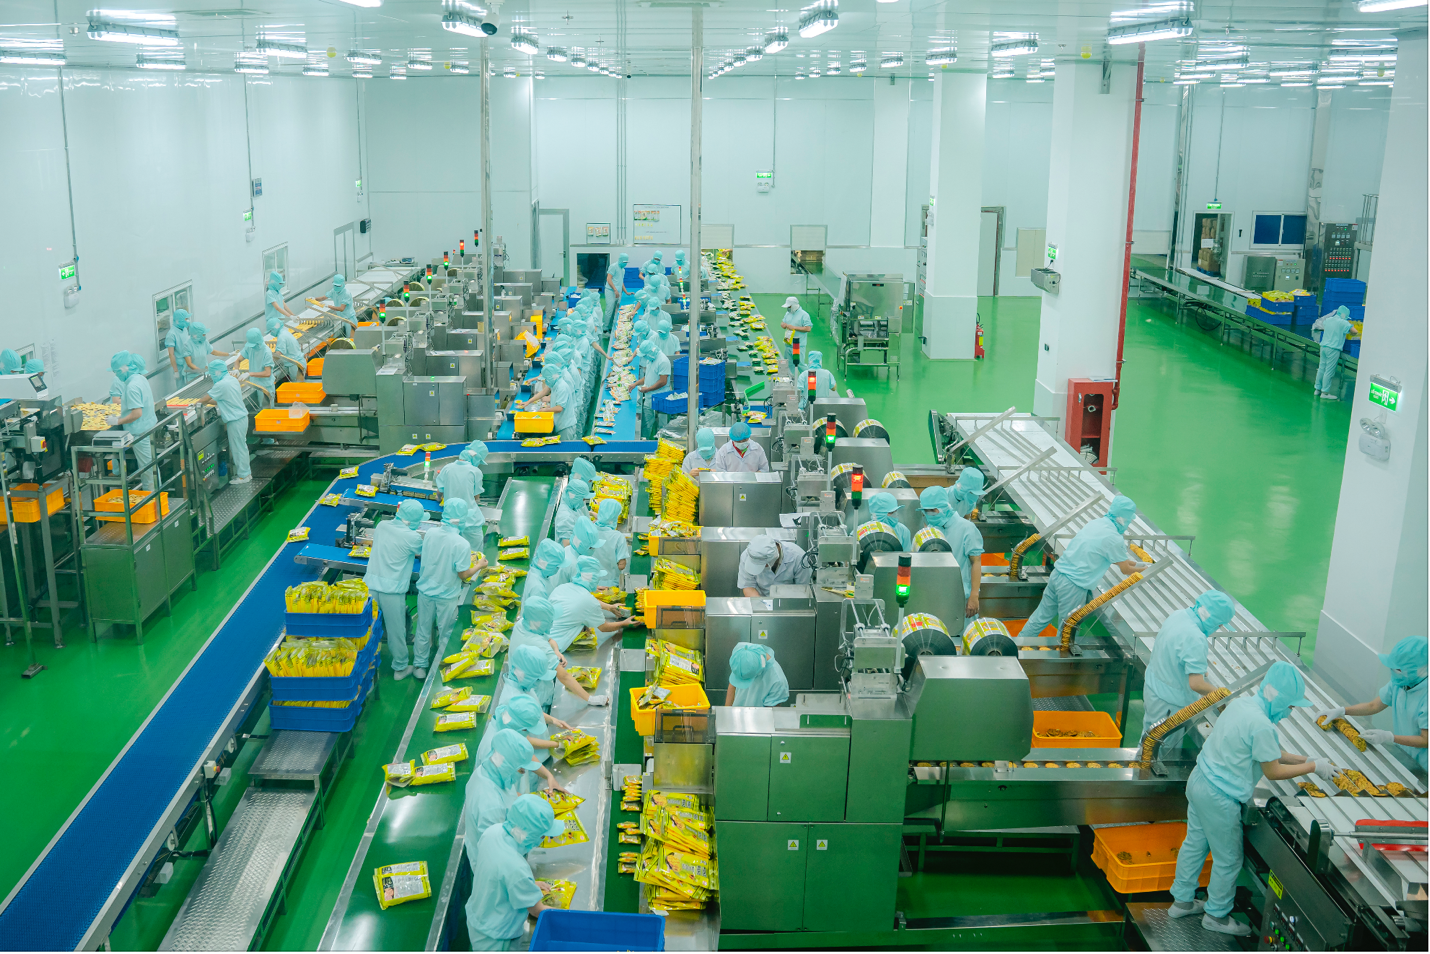 Khánh thành nhà máy Want Want với tổng vốn đầu tư hơn 50 triệu USD tại Tiền Giang - Ảnh 2.